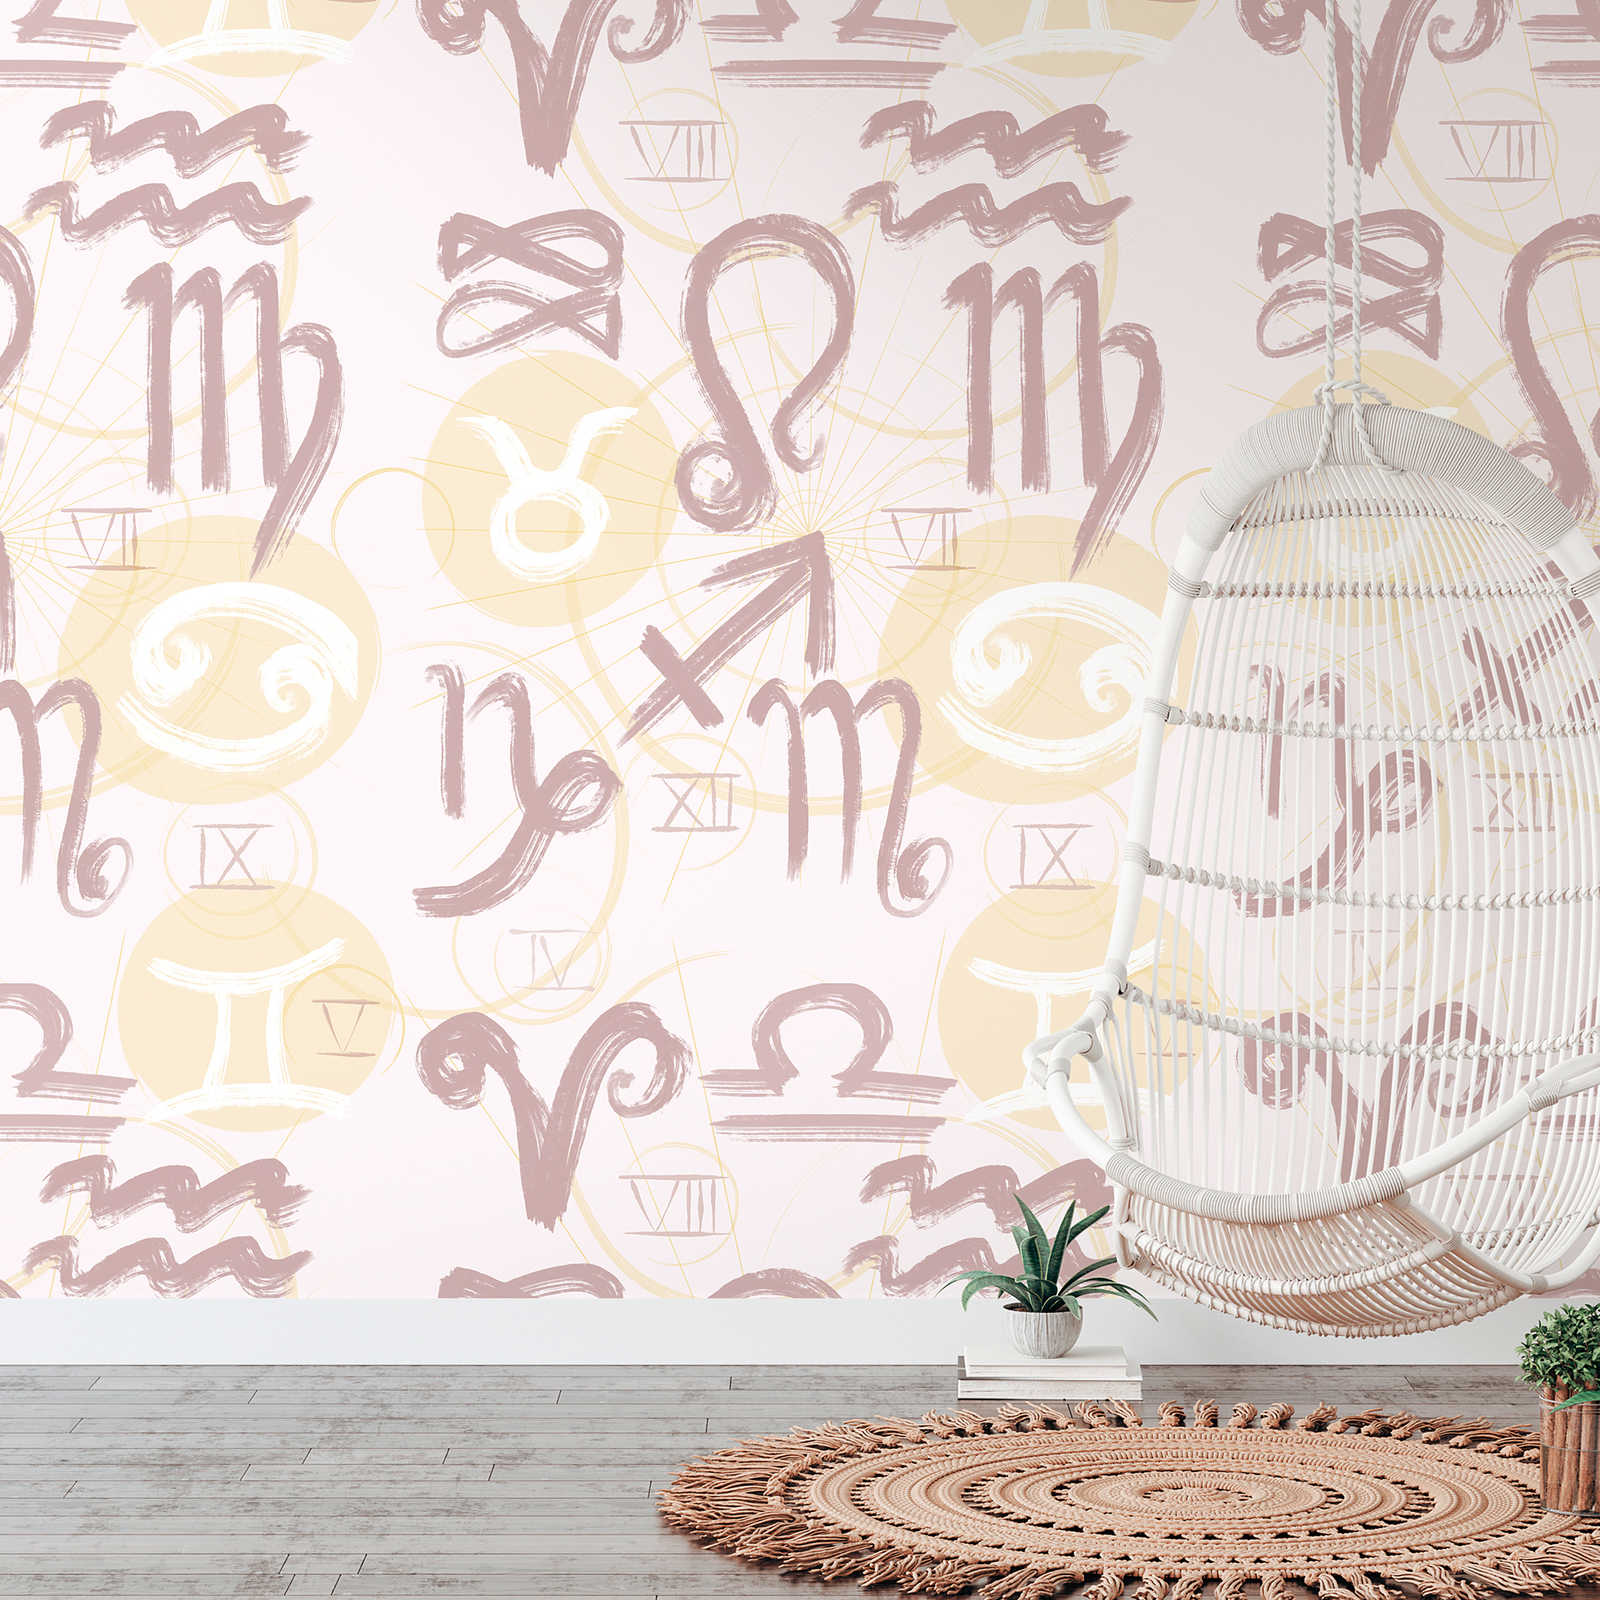 Papier peint avec symboles du zodiaque et chiffres romains - crème, jaune, rose
